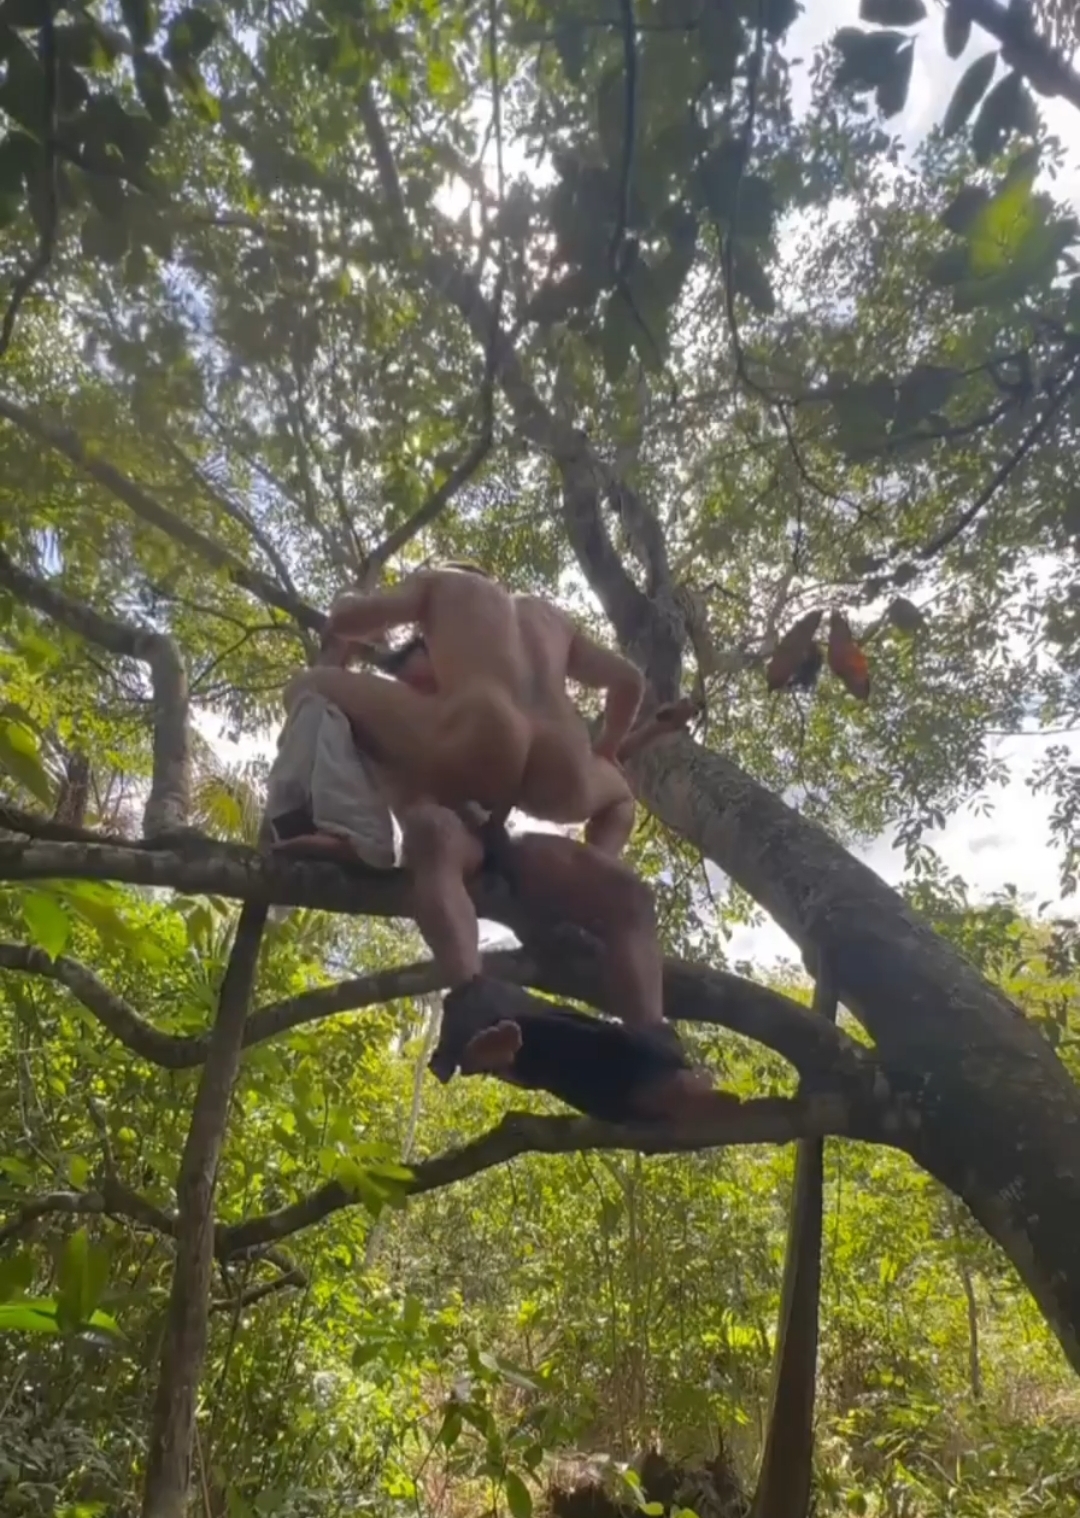 Just Like Tarzan...